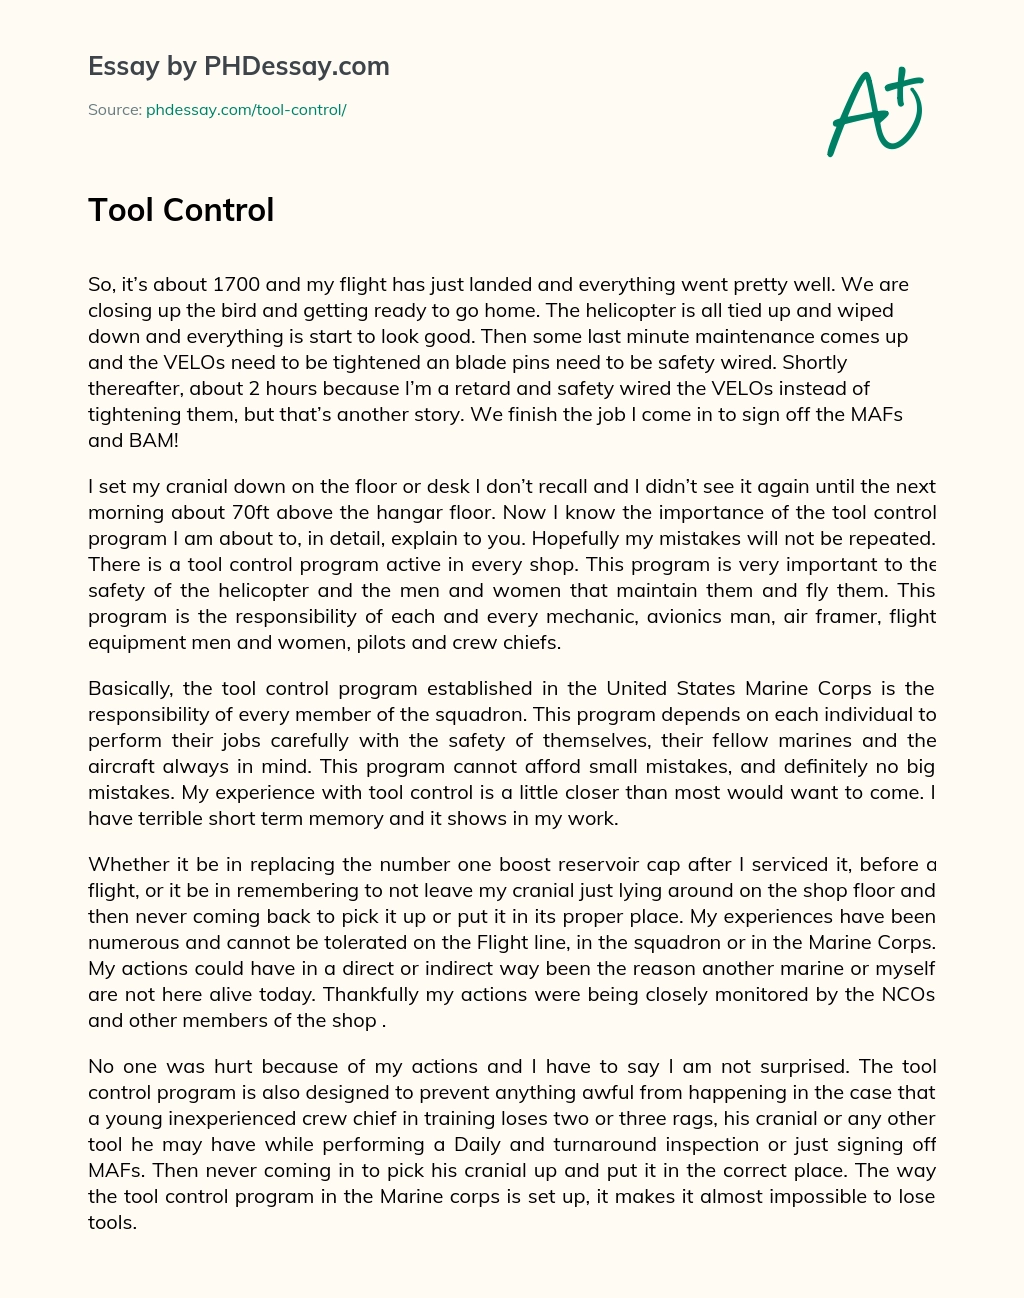 Tool Control essay